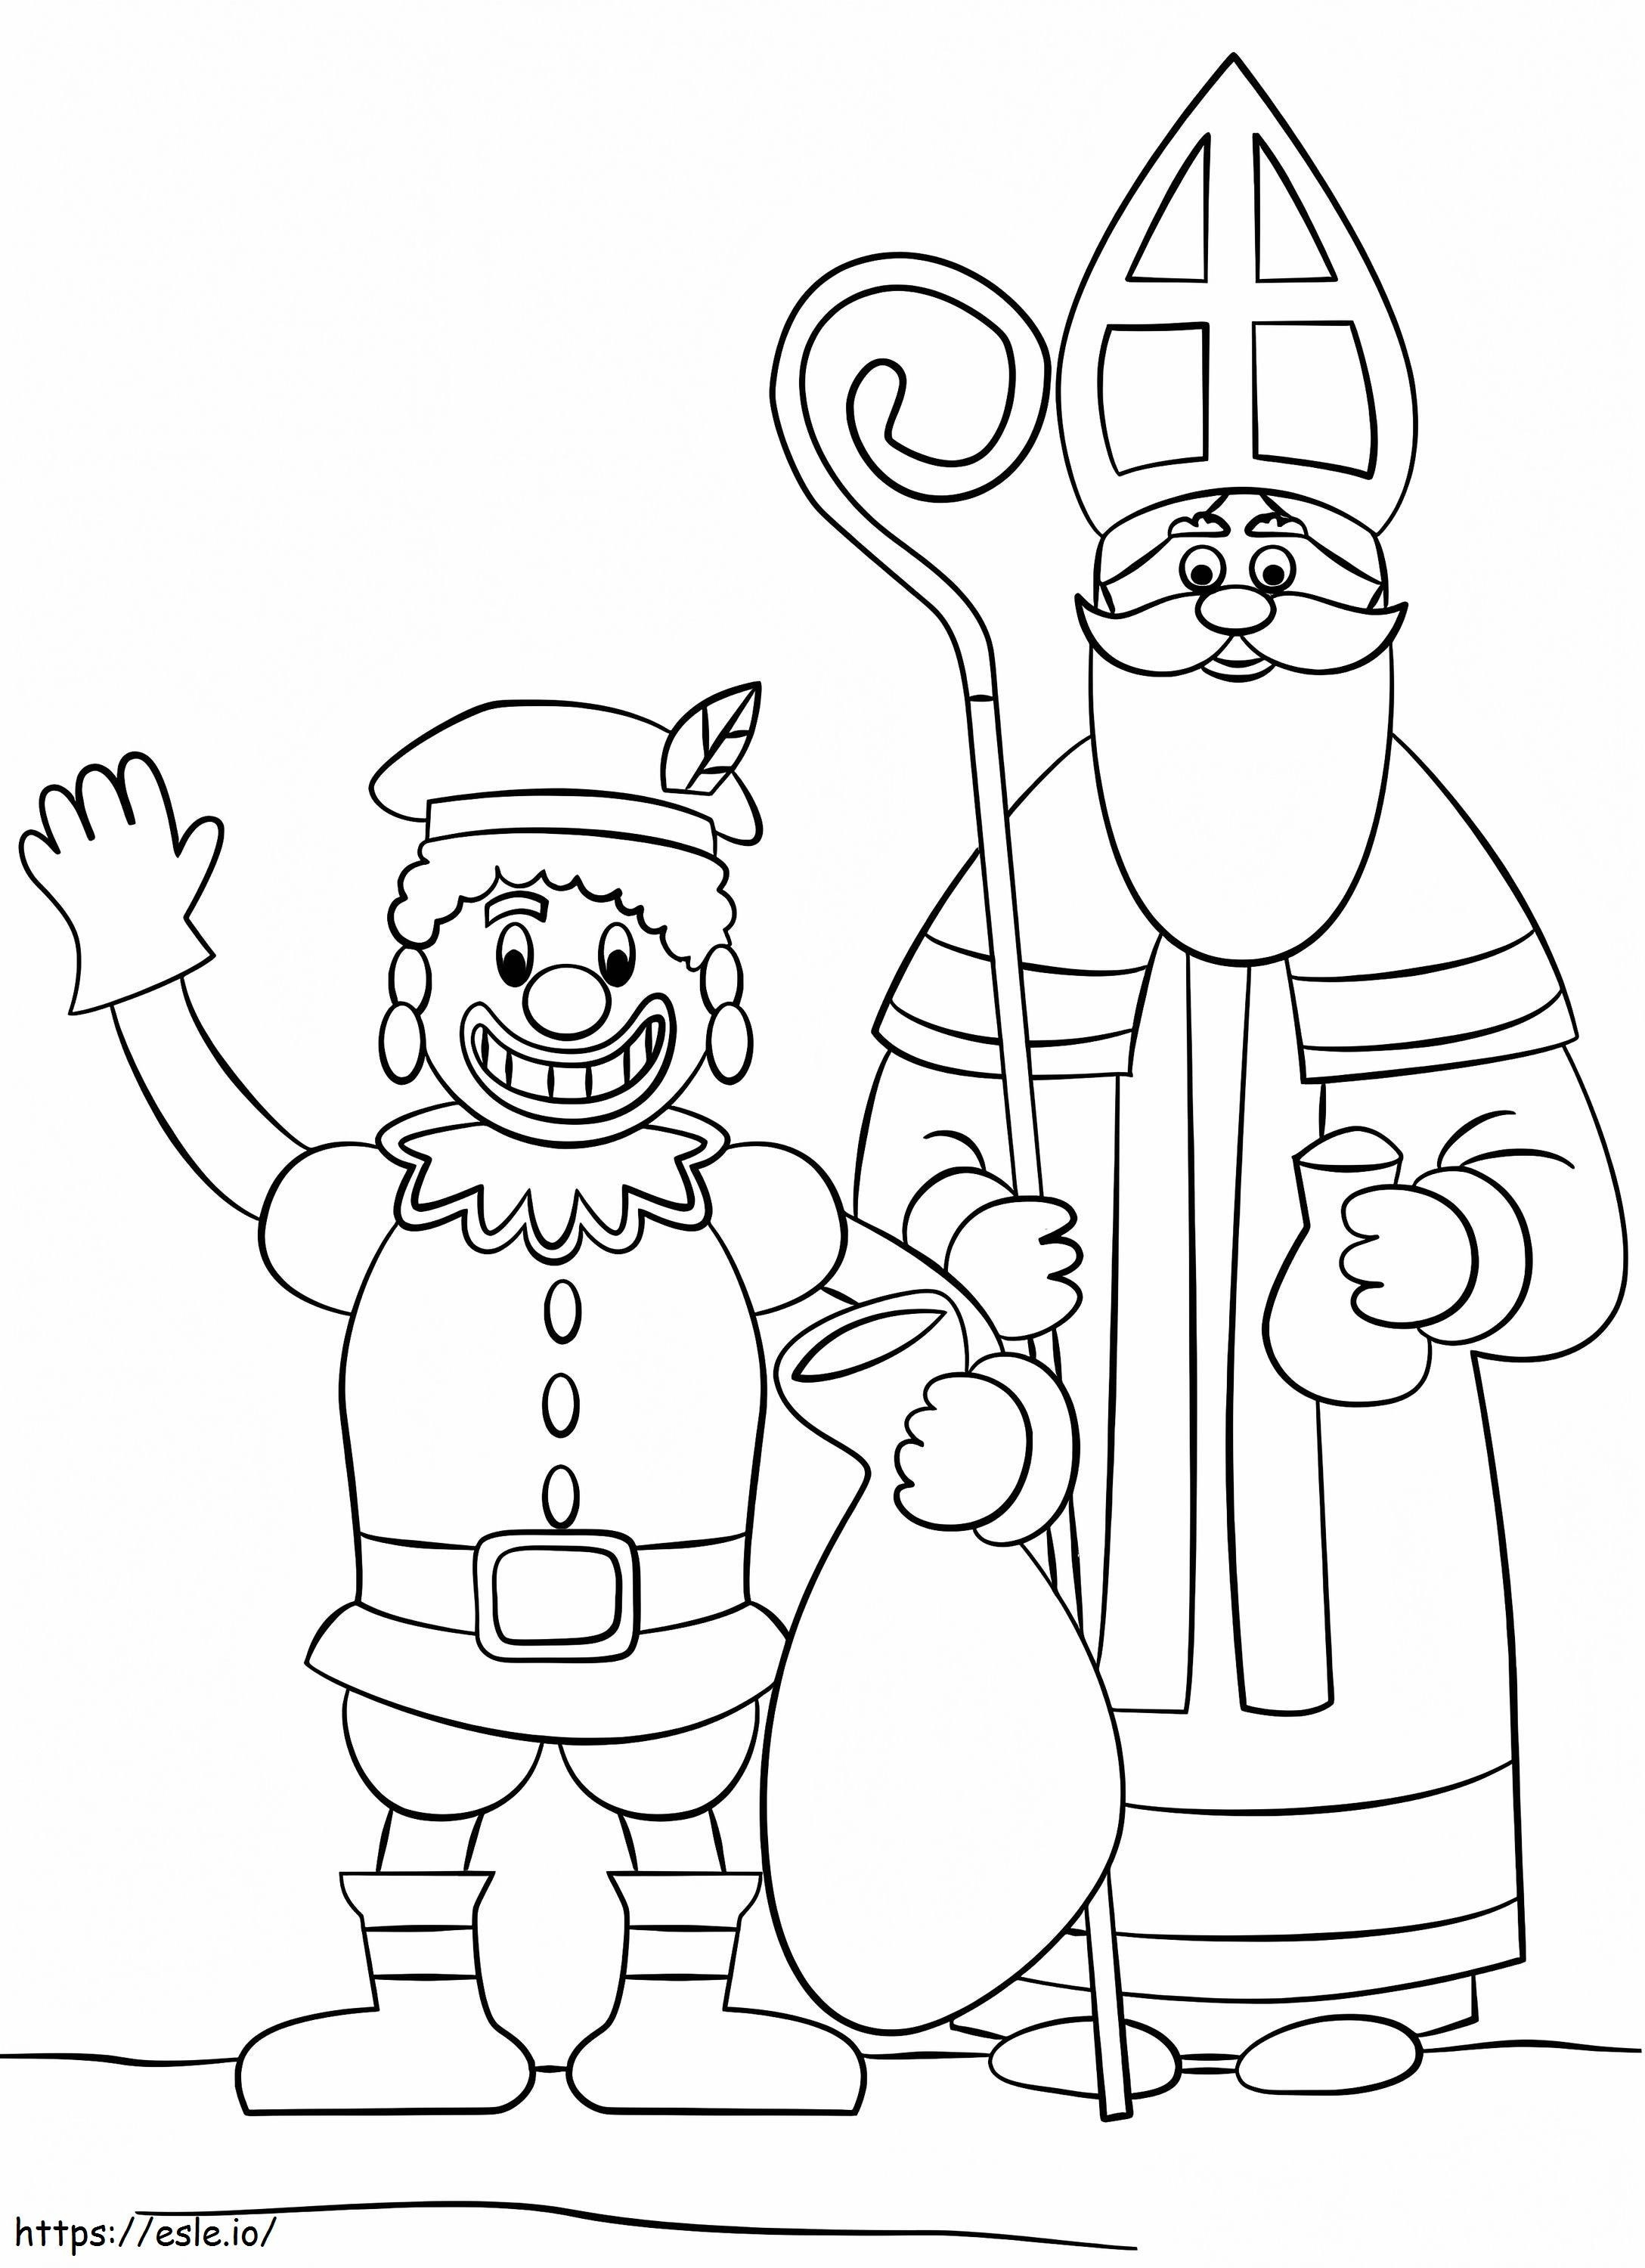 Zwarte Piet en Sinterklaas kleurplaat kleurplaat